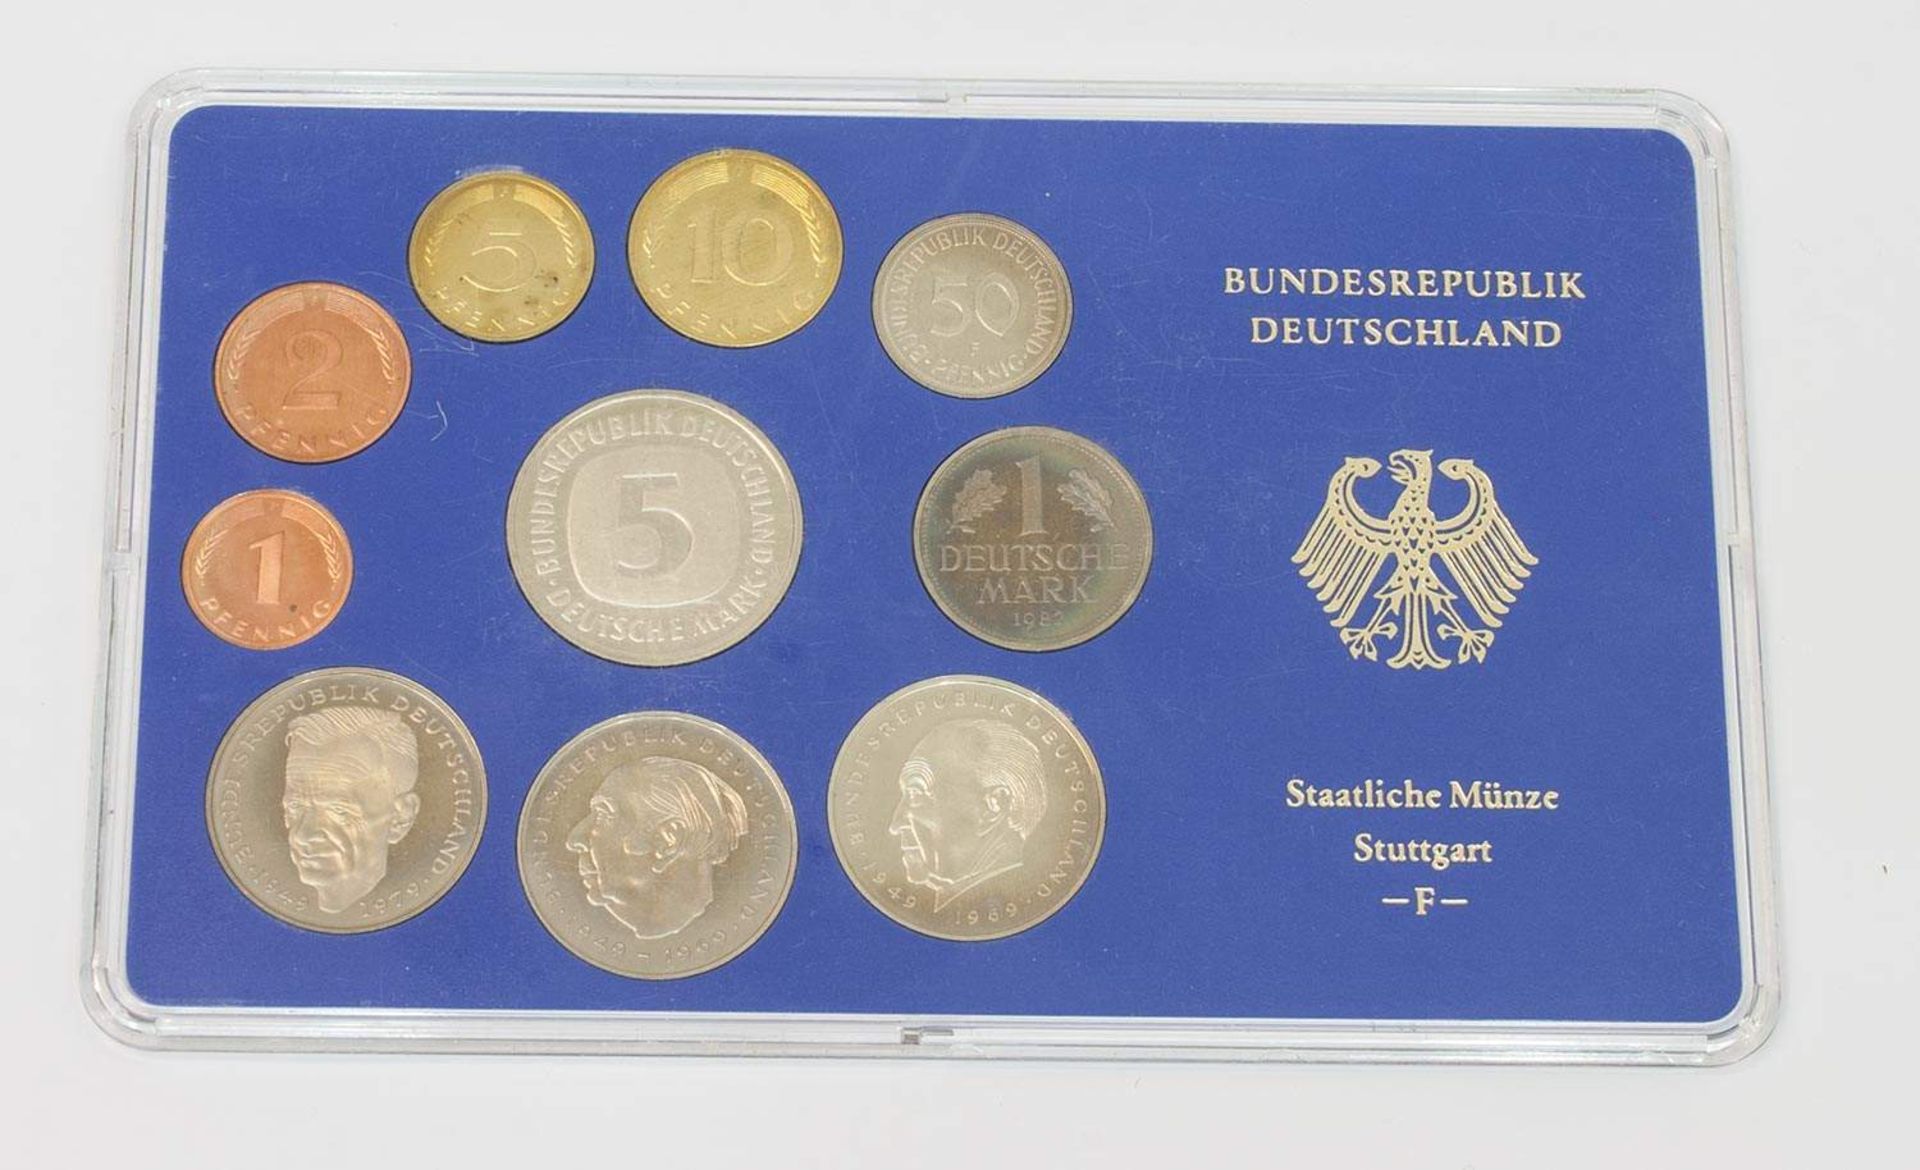 MünzsatzBRD 1982 F, 5 Mark - 1 Pfennig, dabei 3 x 2 Mark, stgl.Aufrufpreis: 5 EUR